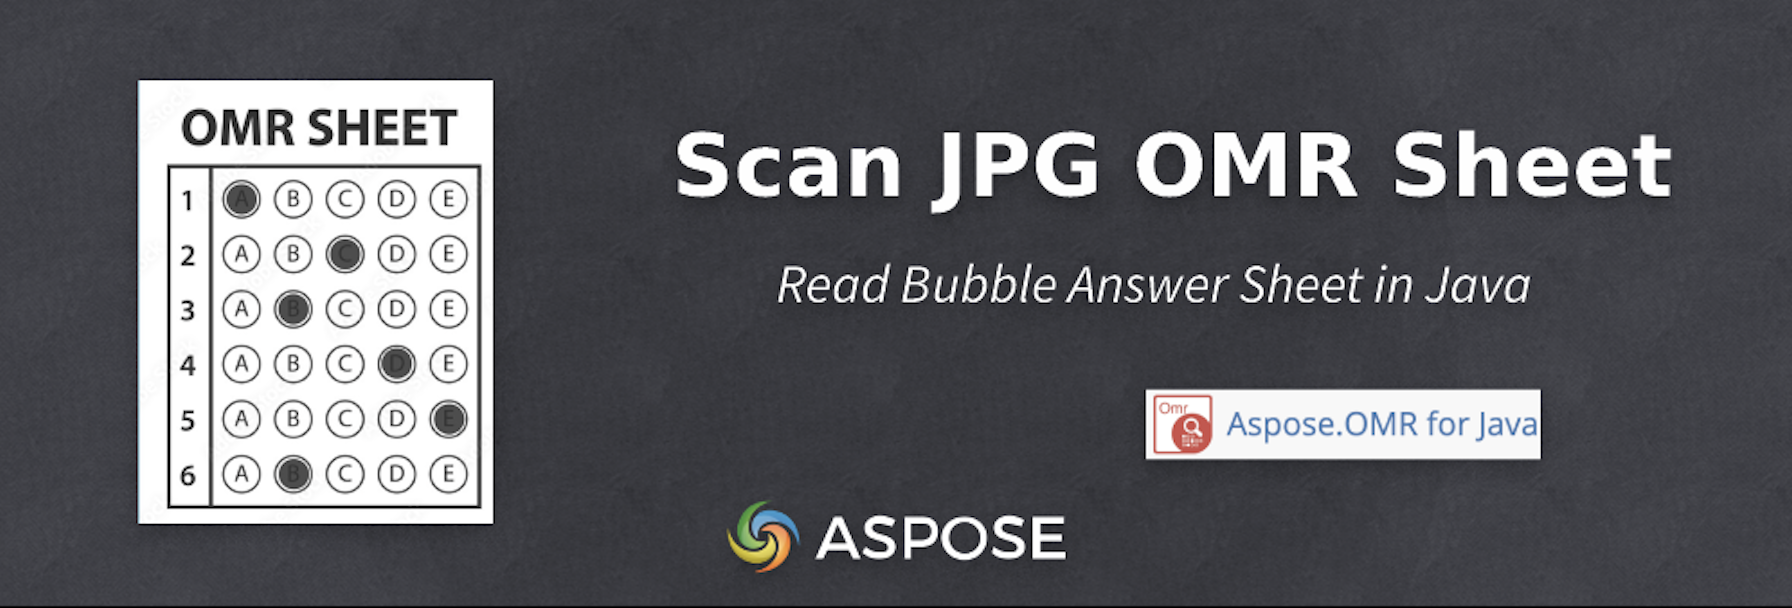 Bubble-Antwortbogen in Java scannen – OMR-Blatt JPG